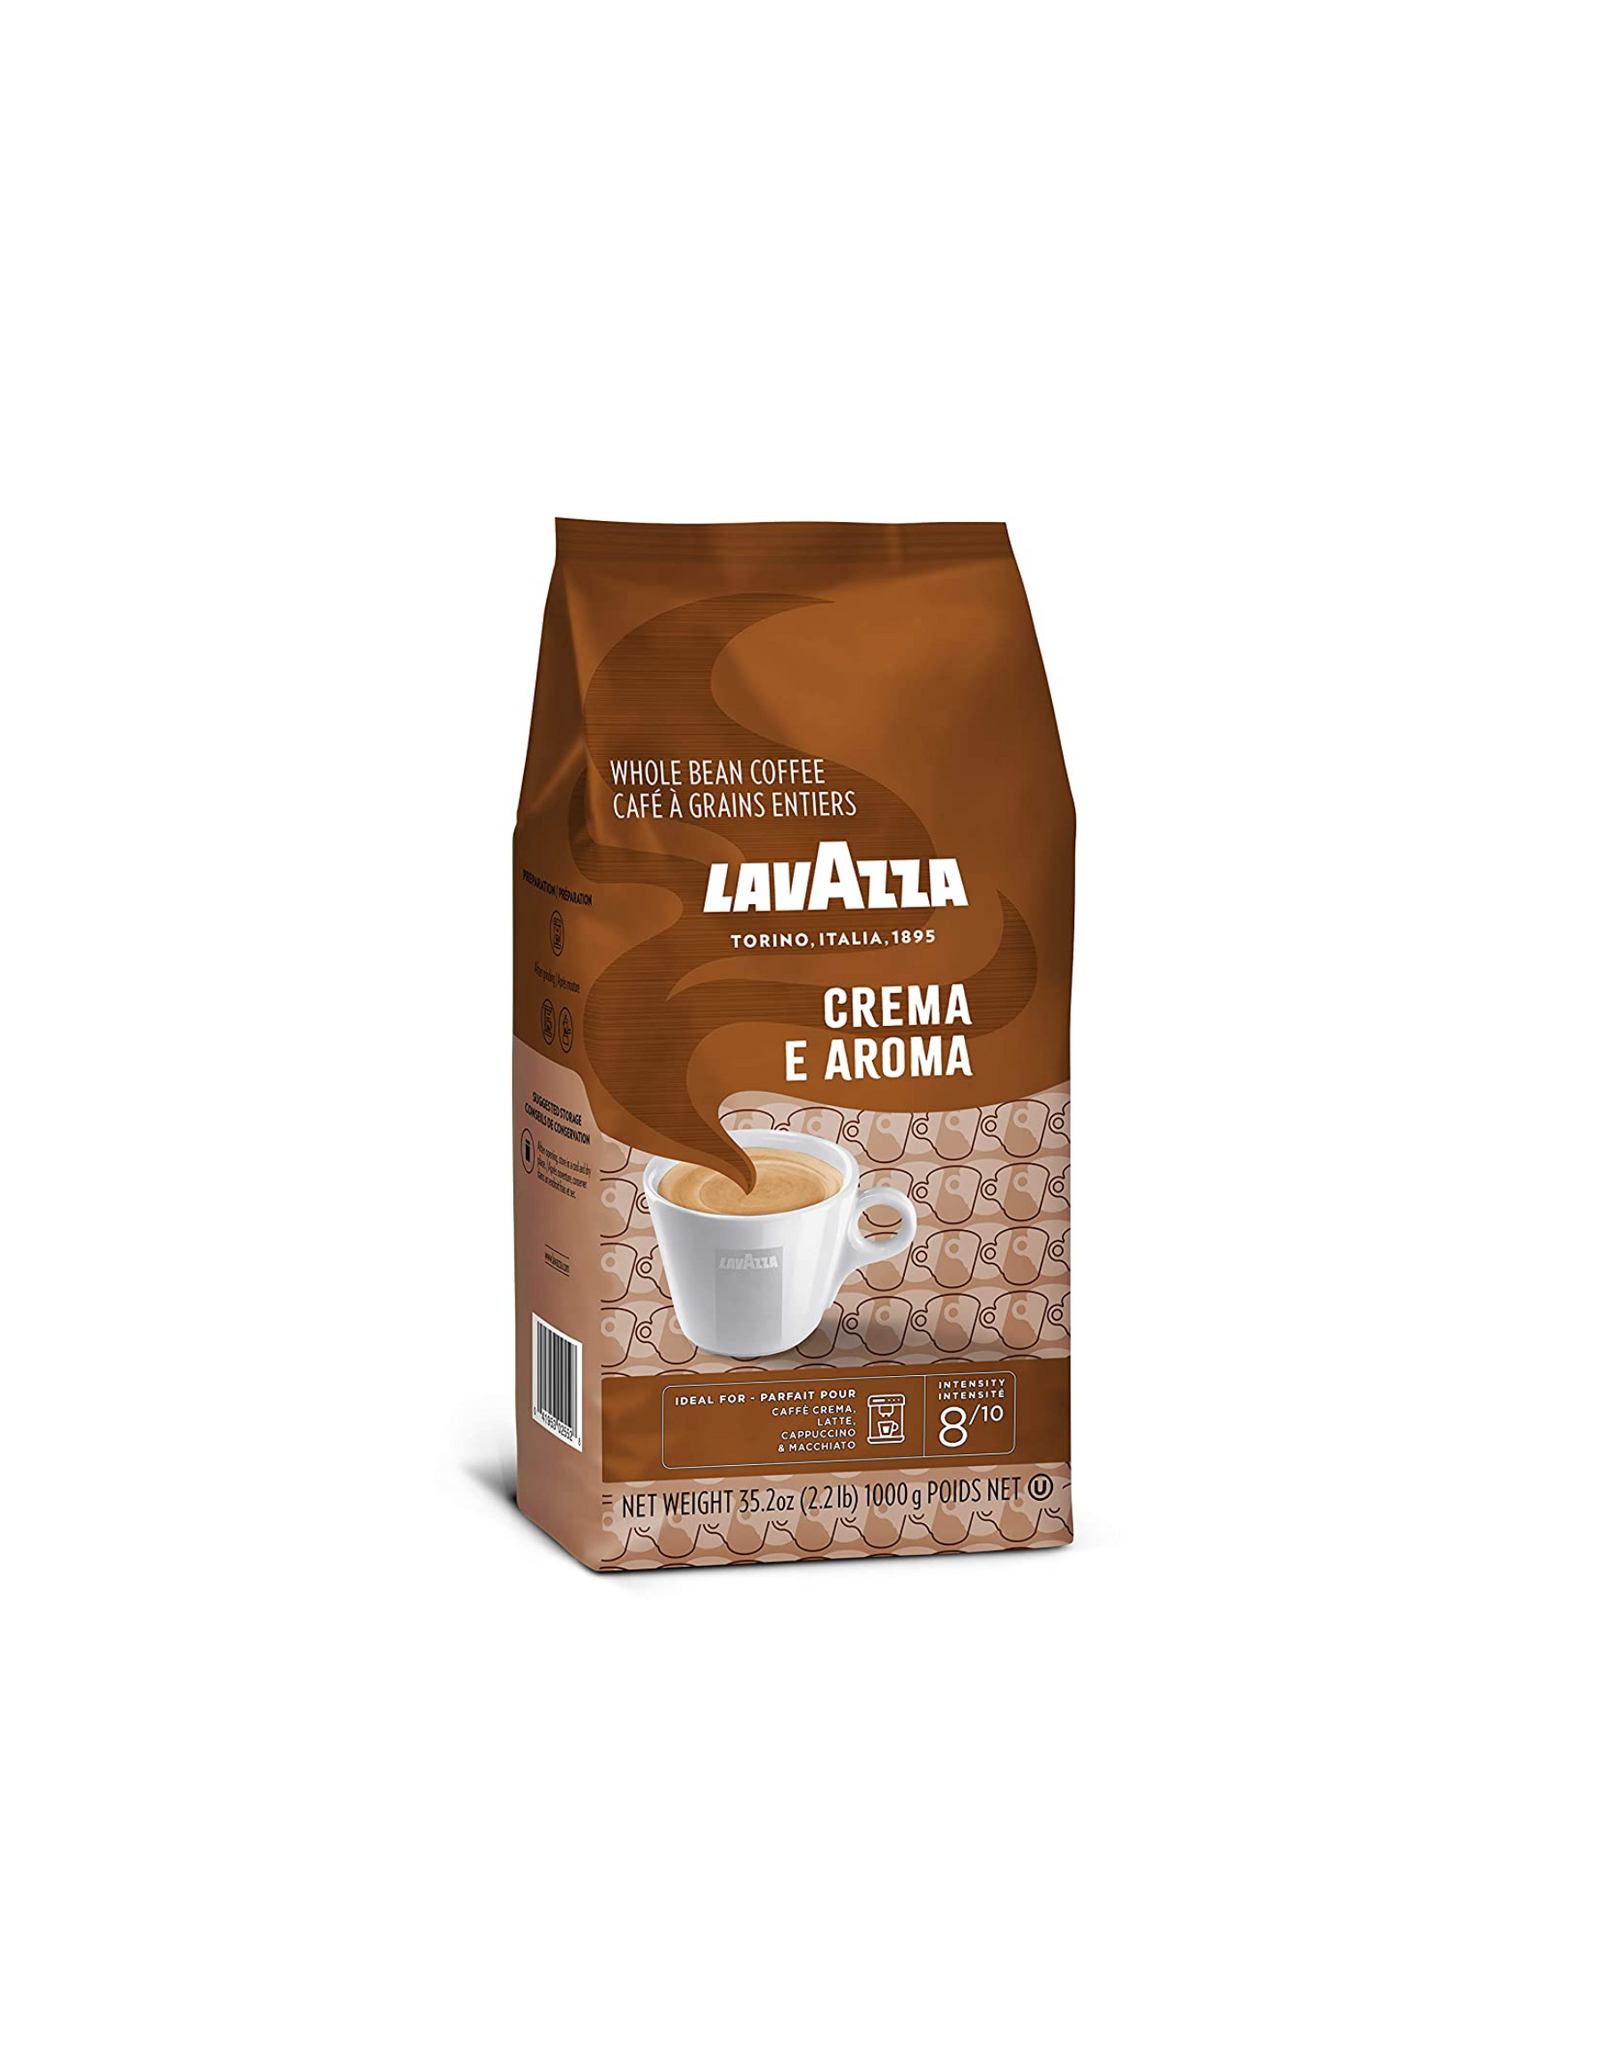 Lavazza Crema E Aroma Whole Bean Coffee Blend, Medium Roast, 35.2 oz (2.2 lb.)